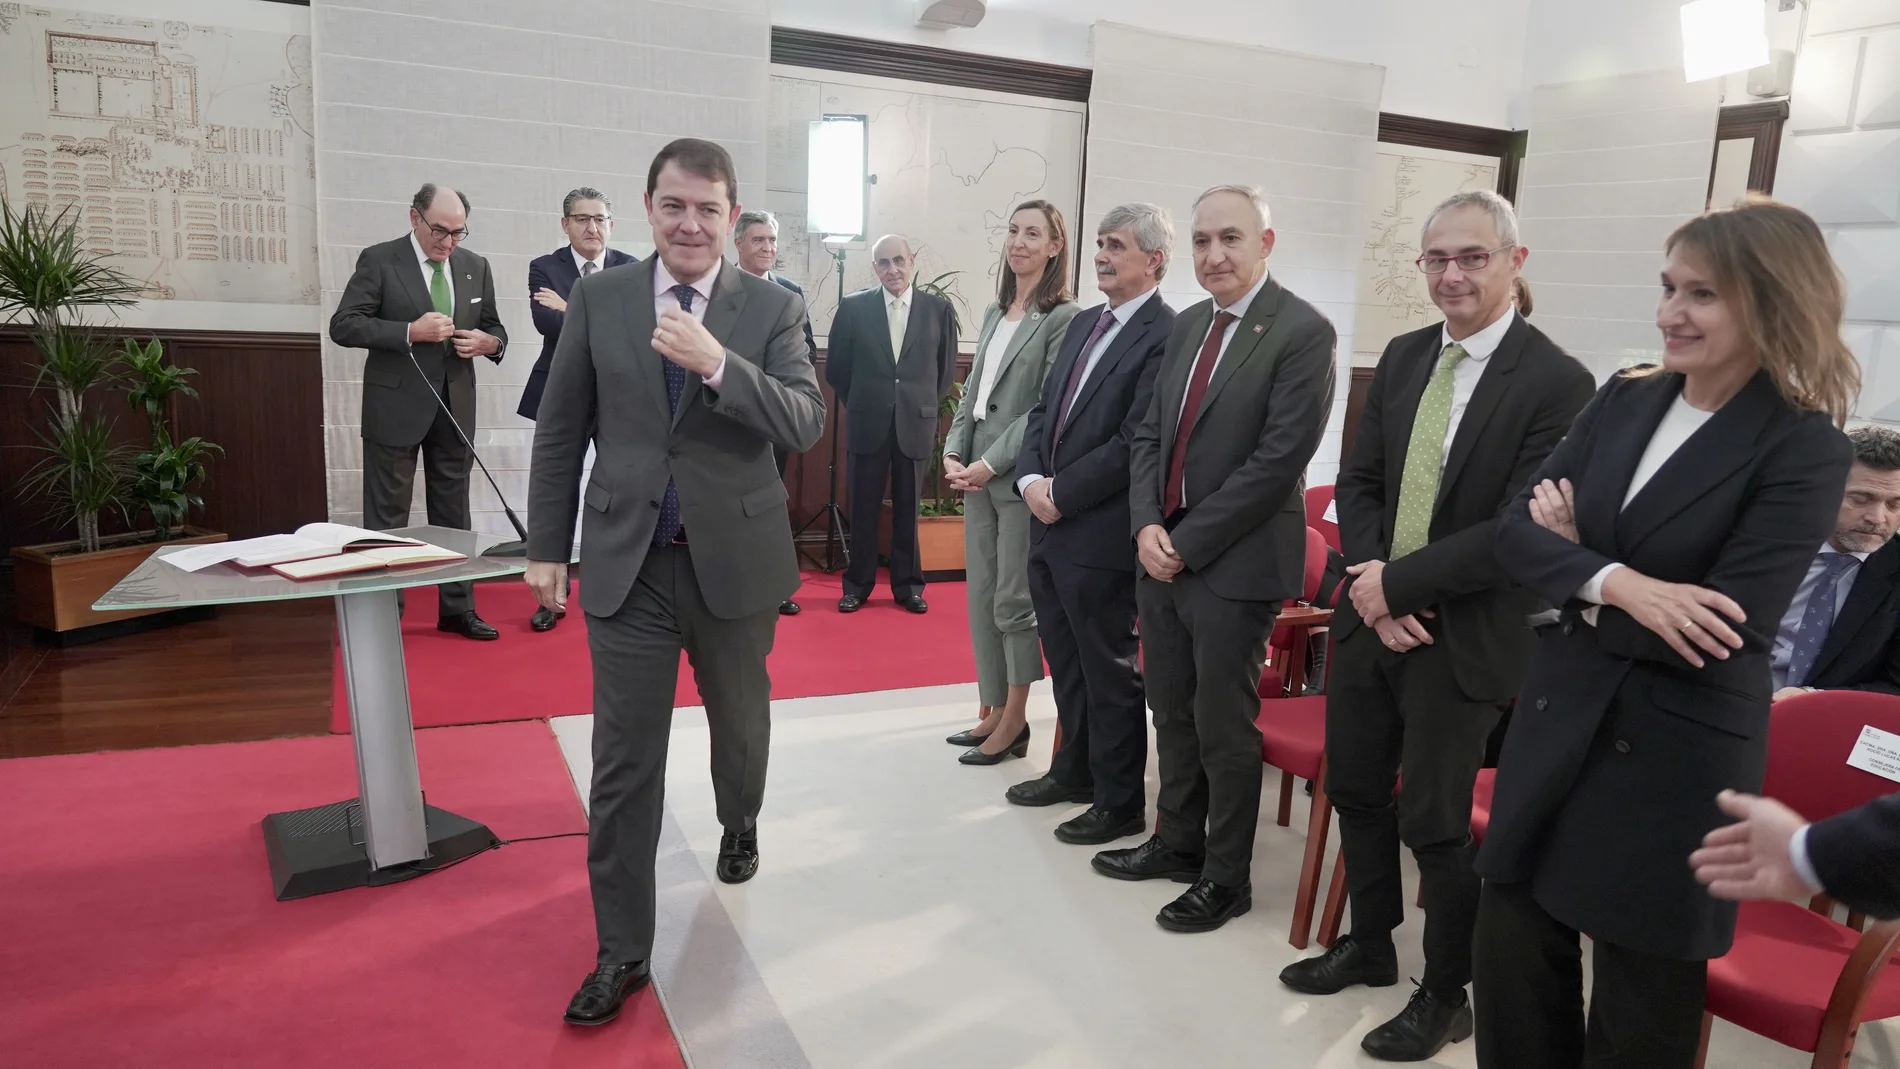 El presidente Fernández Mañueco clausura la toma de posesión de los presidentes de los consejos sociales de las Universidades públicas